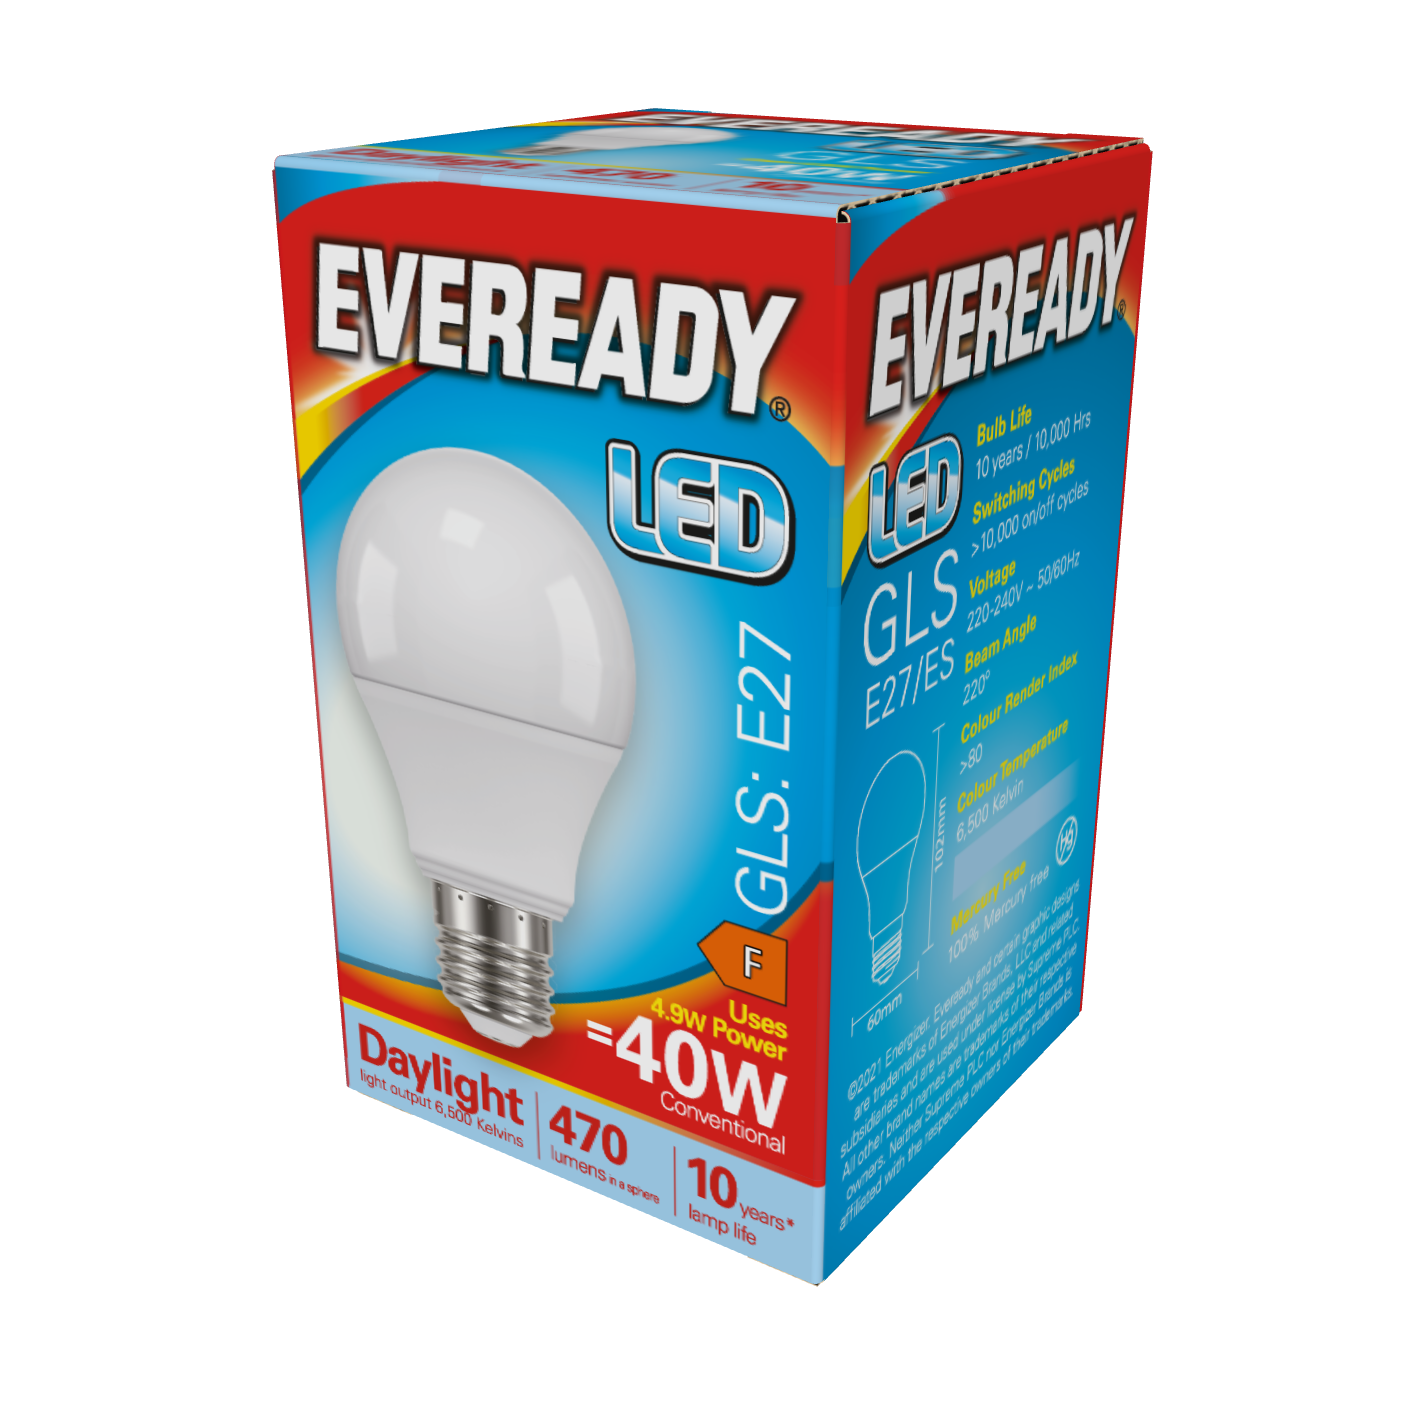 Eveready LED GLS E27 (ES) 470lm 4,9W 6.500K (Tageslicht), Packung mit 1 Stück